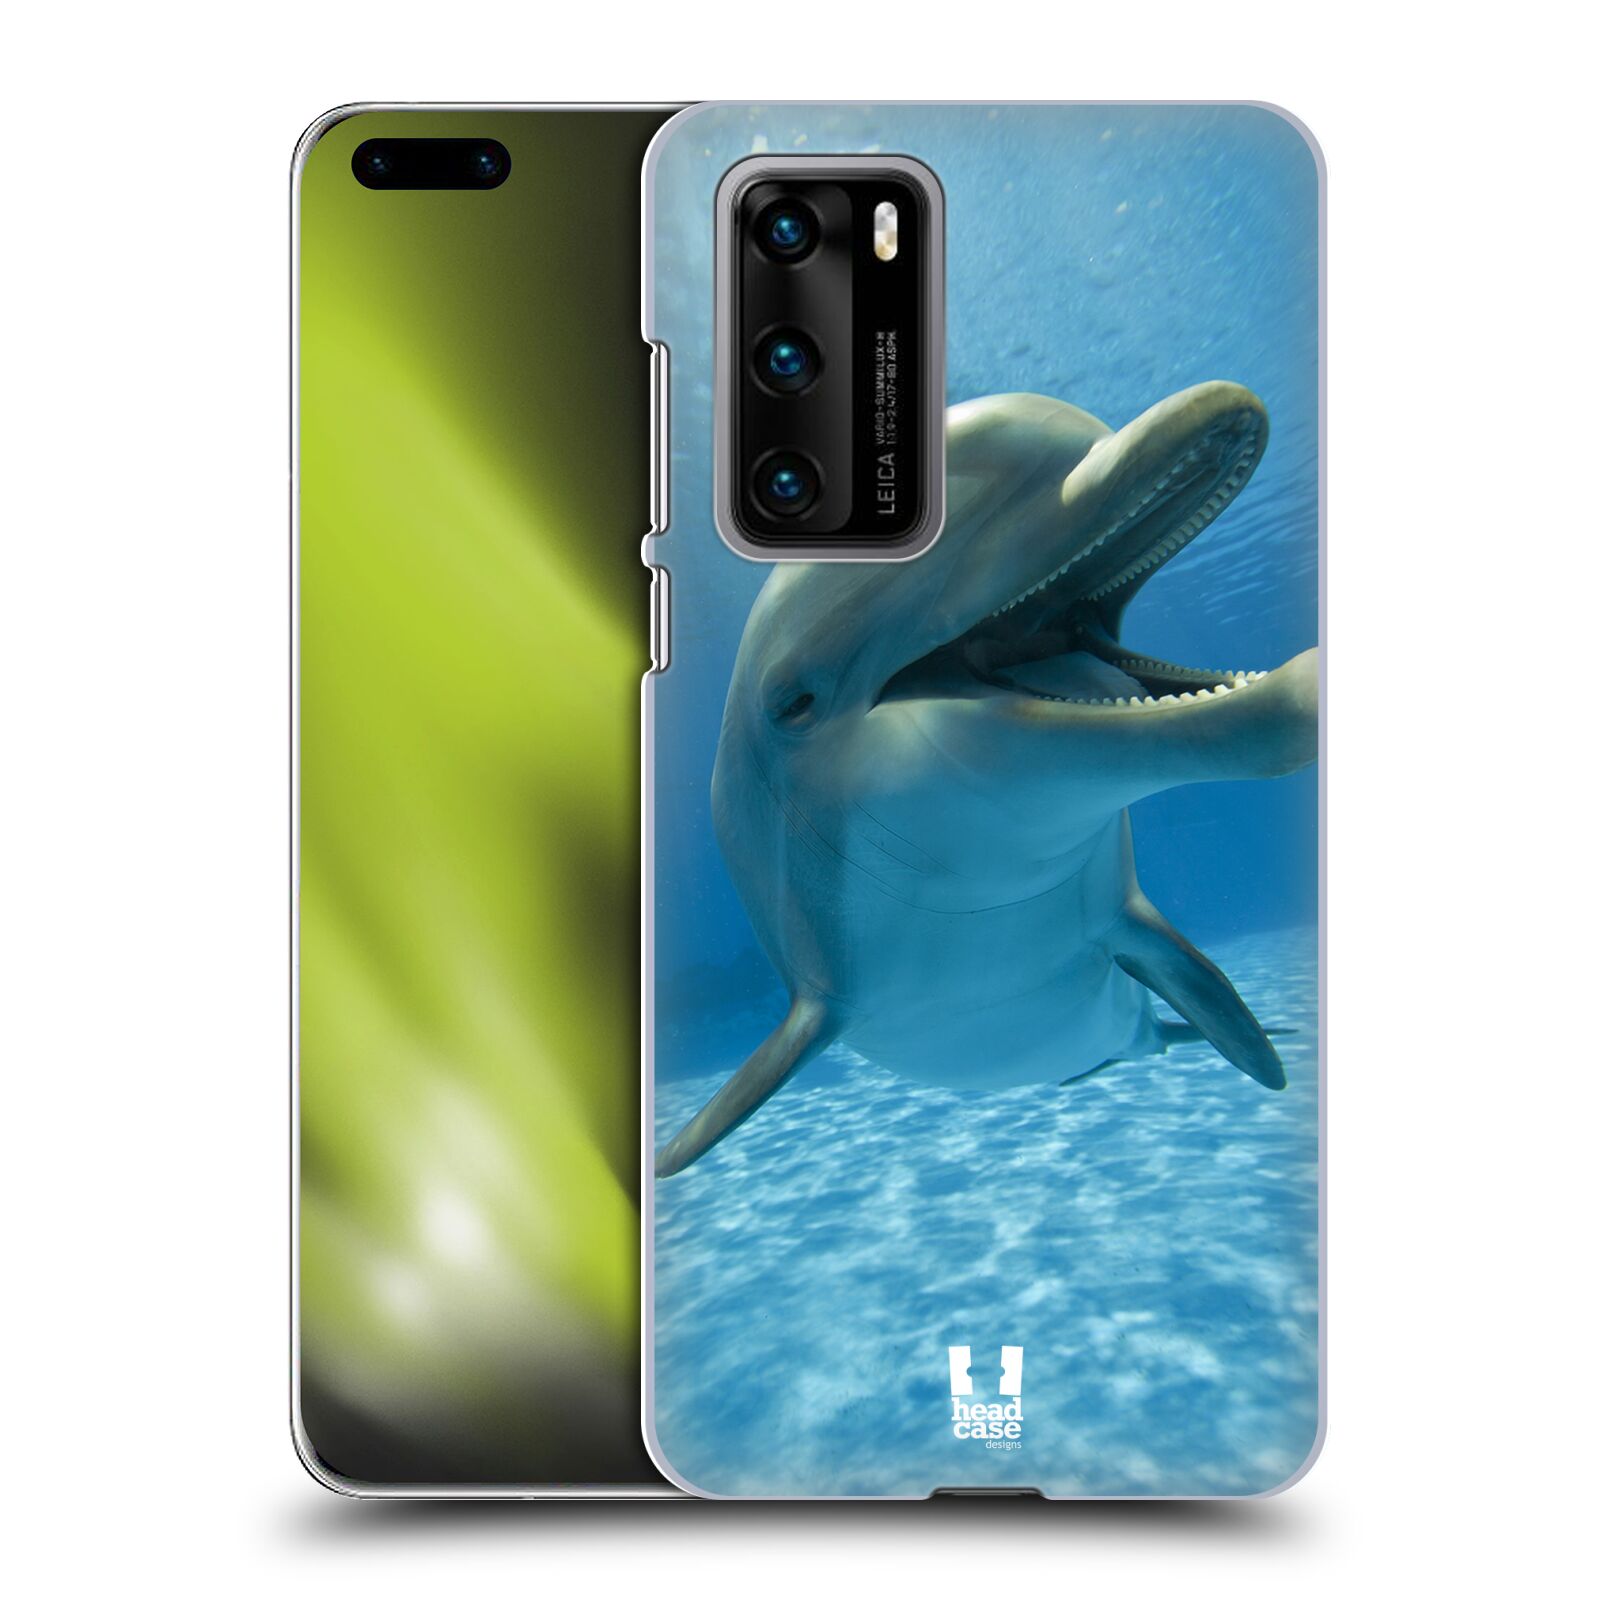 Zadní obal pro mobil Huawei P40 - HEAD CASE - Svět zvířat delfín v moři